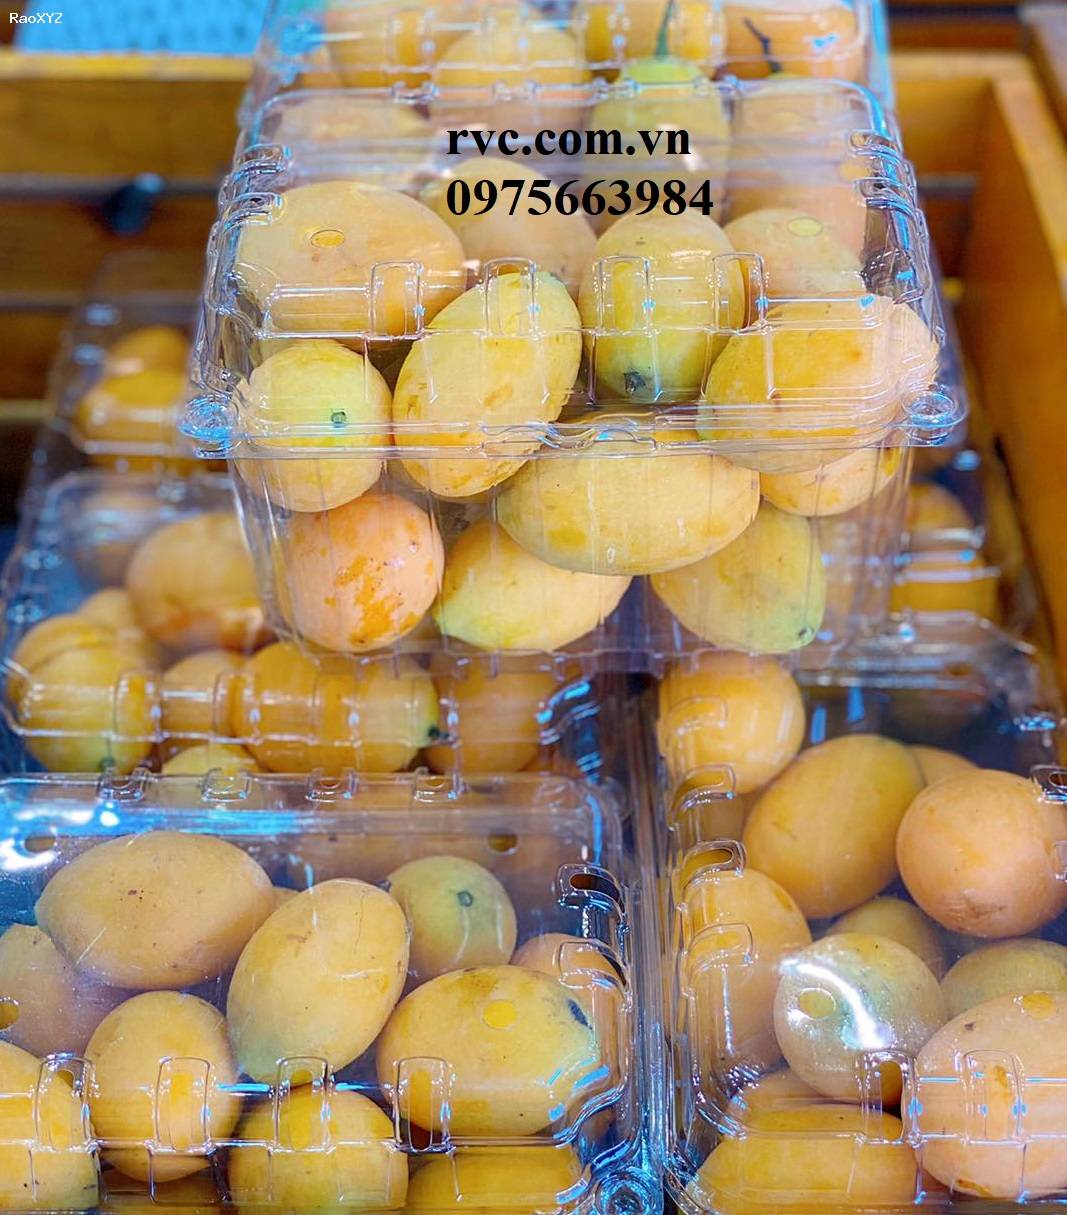 Hộp nhựa trái cây 1kg P1000B đạt chuẩn an toàn thực phẩm